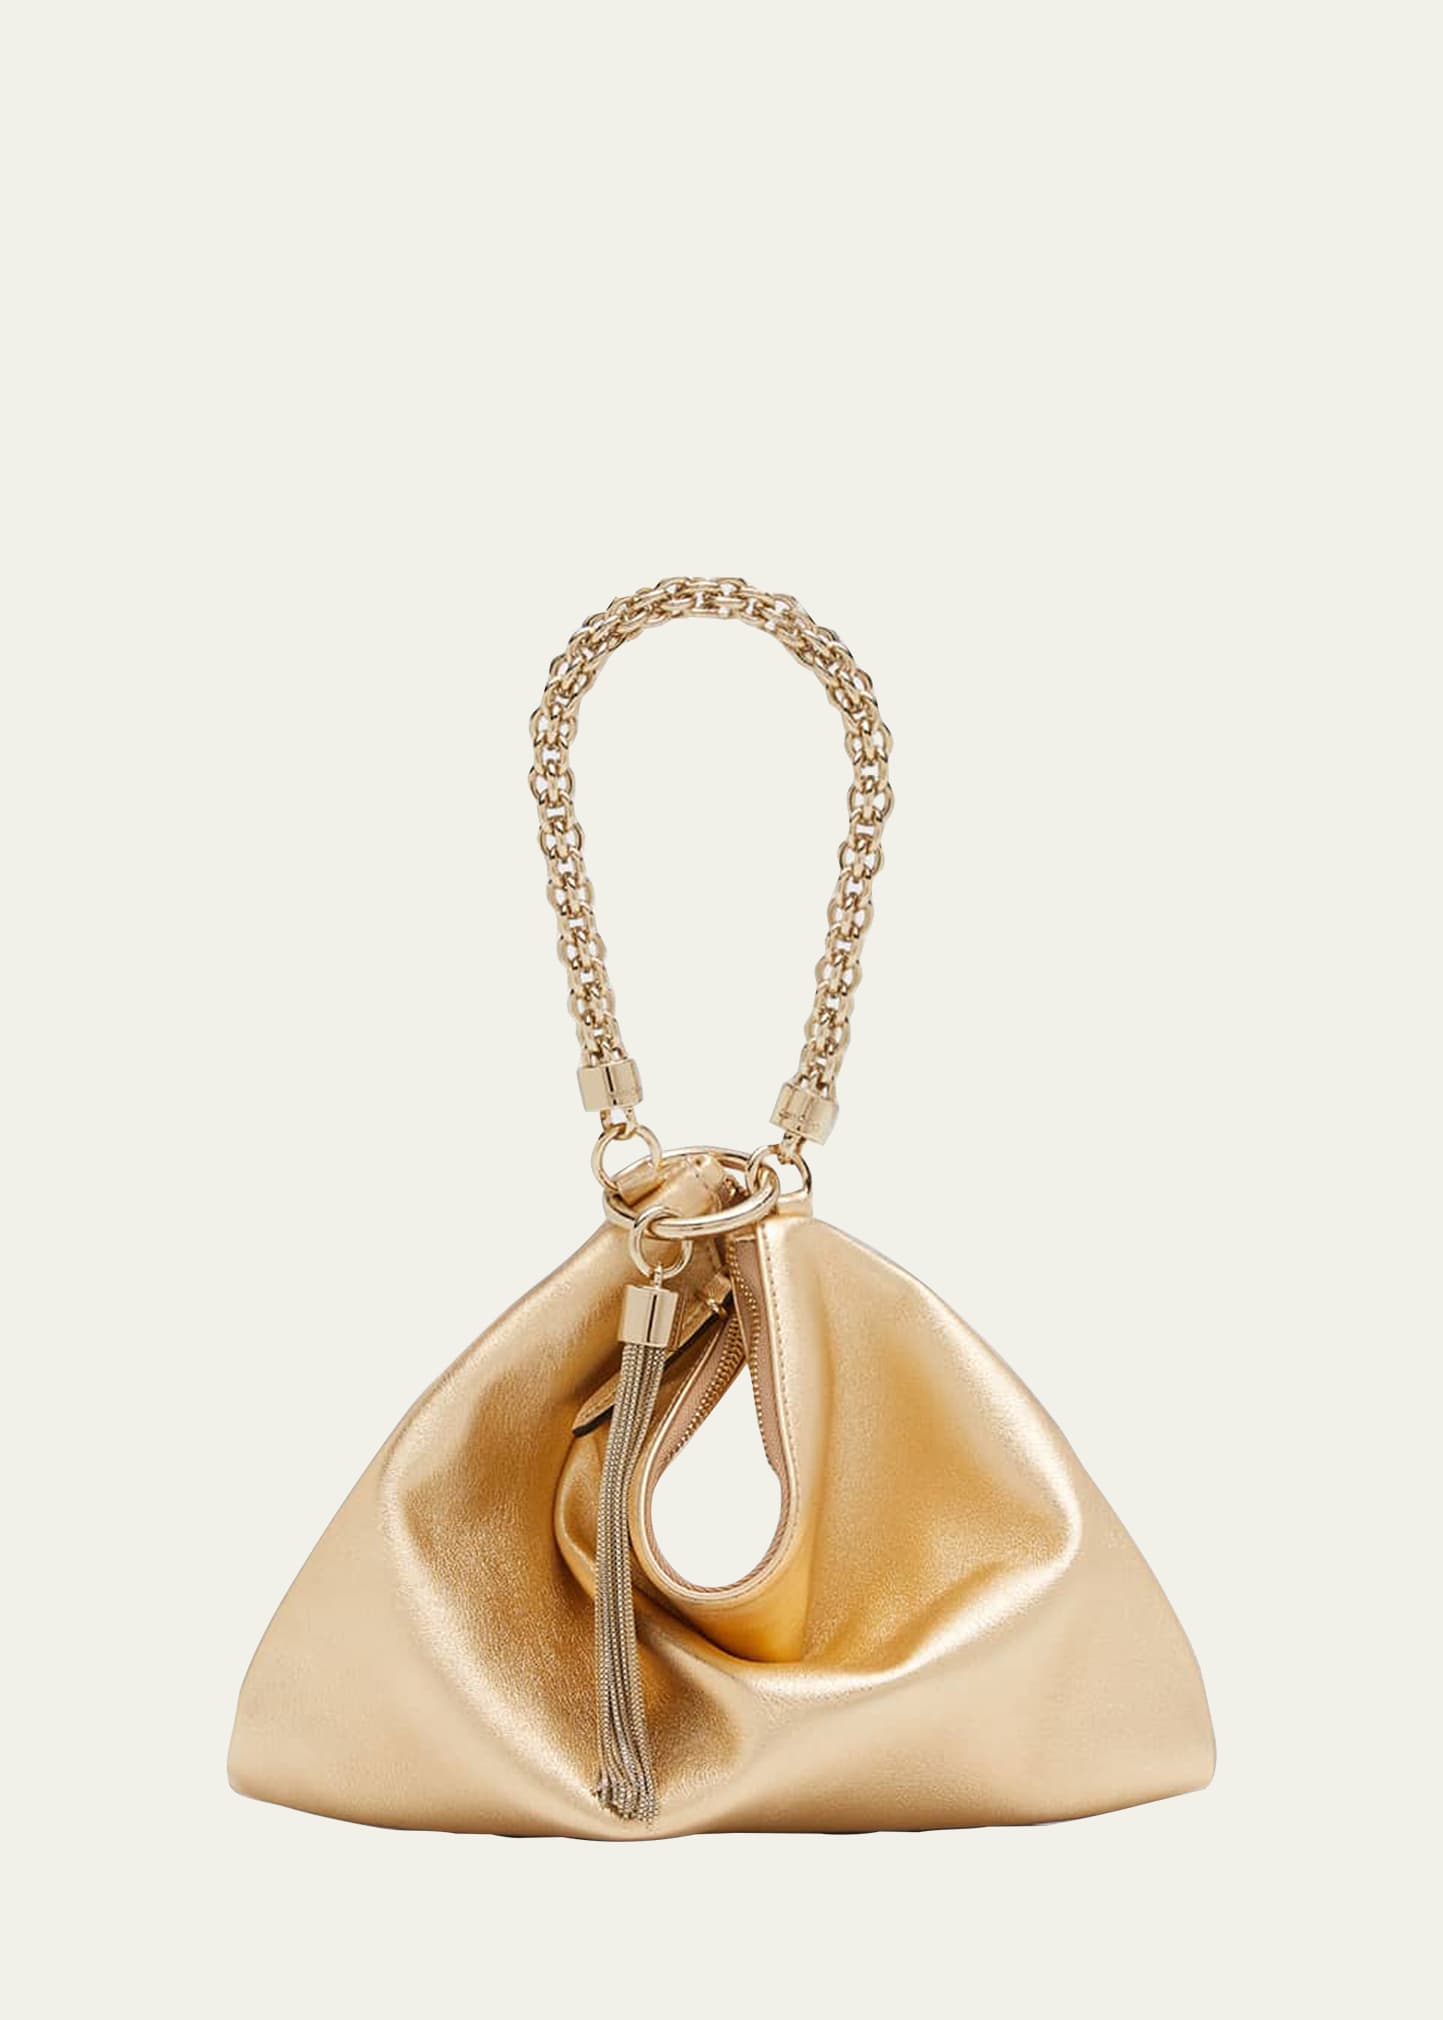 Jimmy Choo Callie Metallic Chain Top-handle Bag In Gold